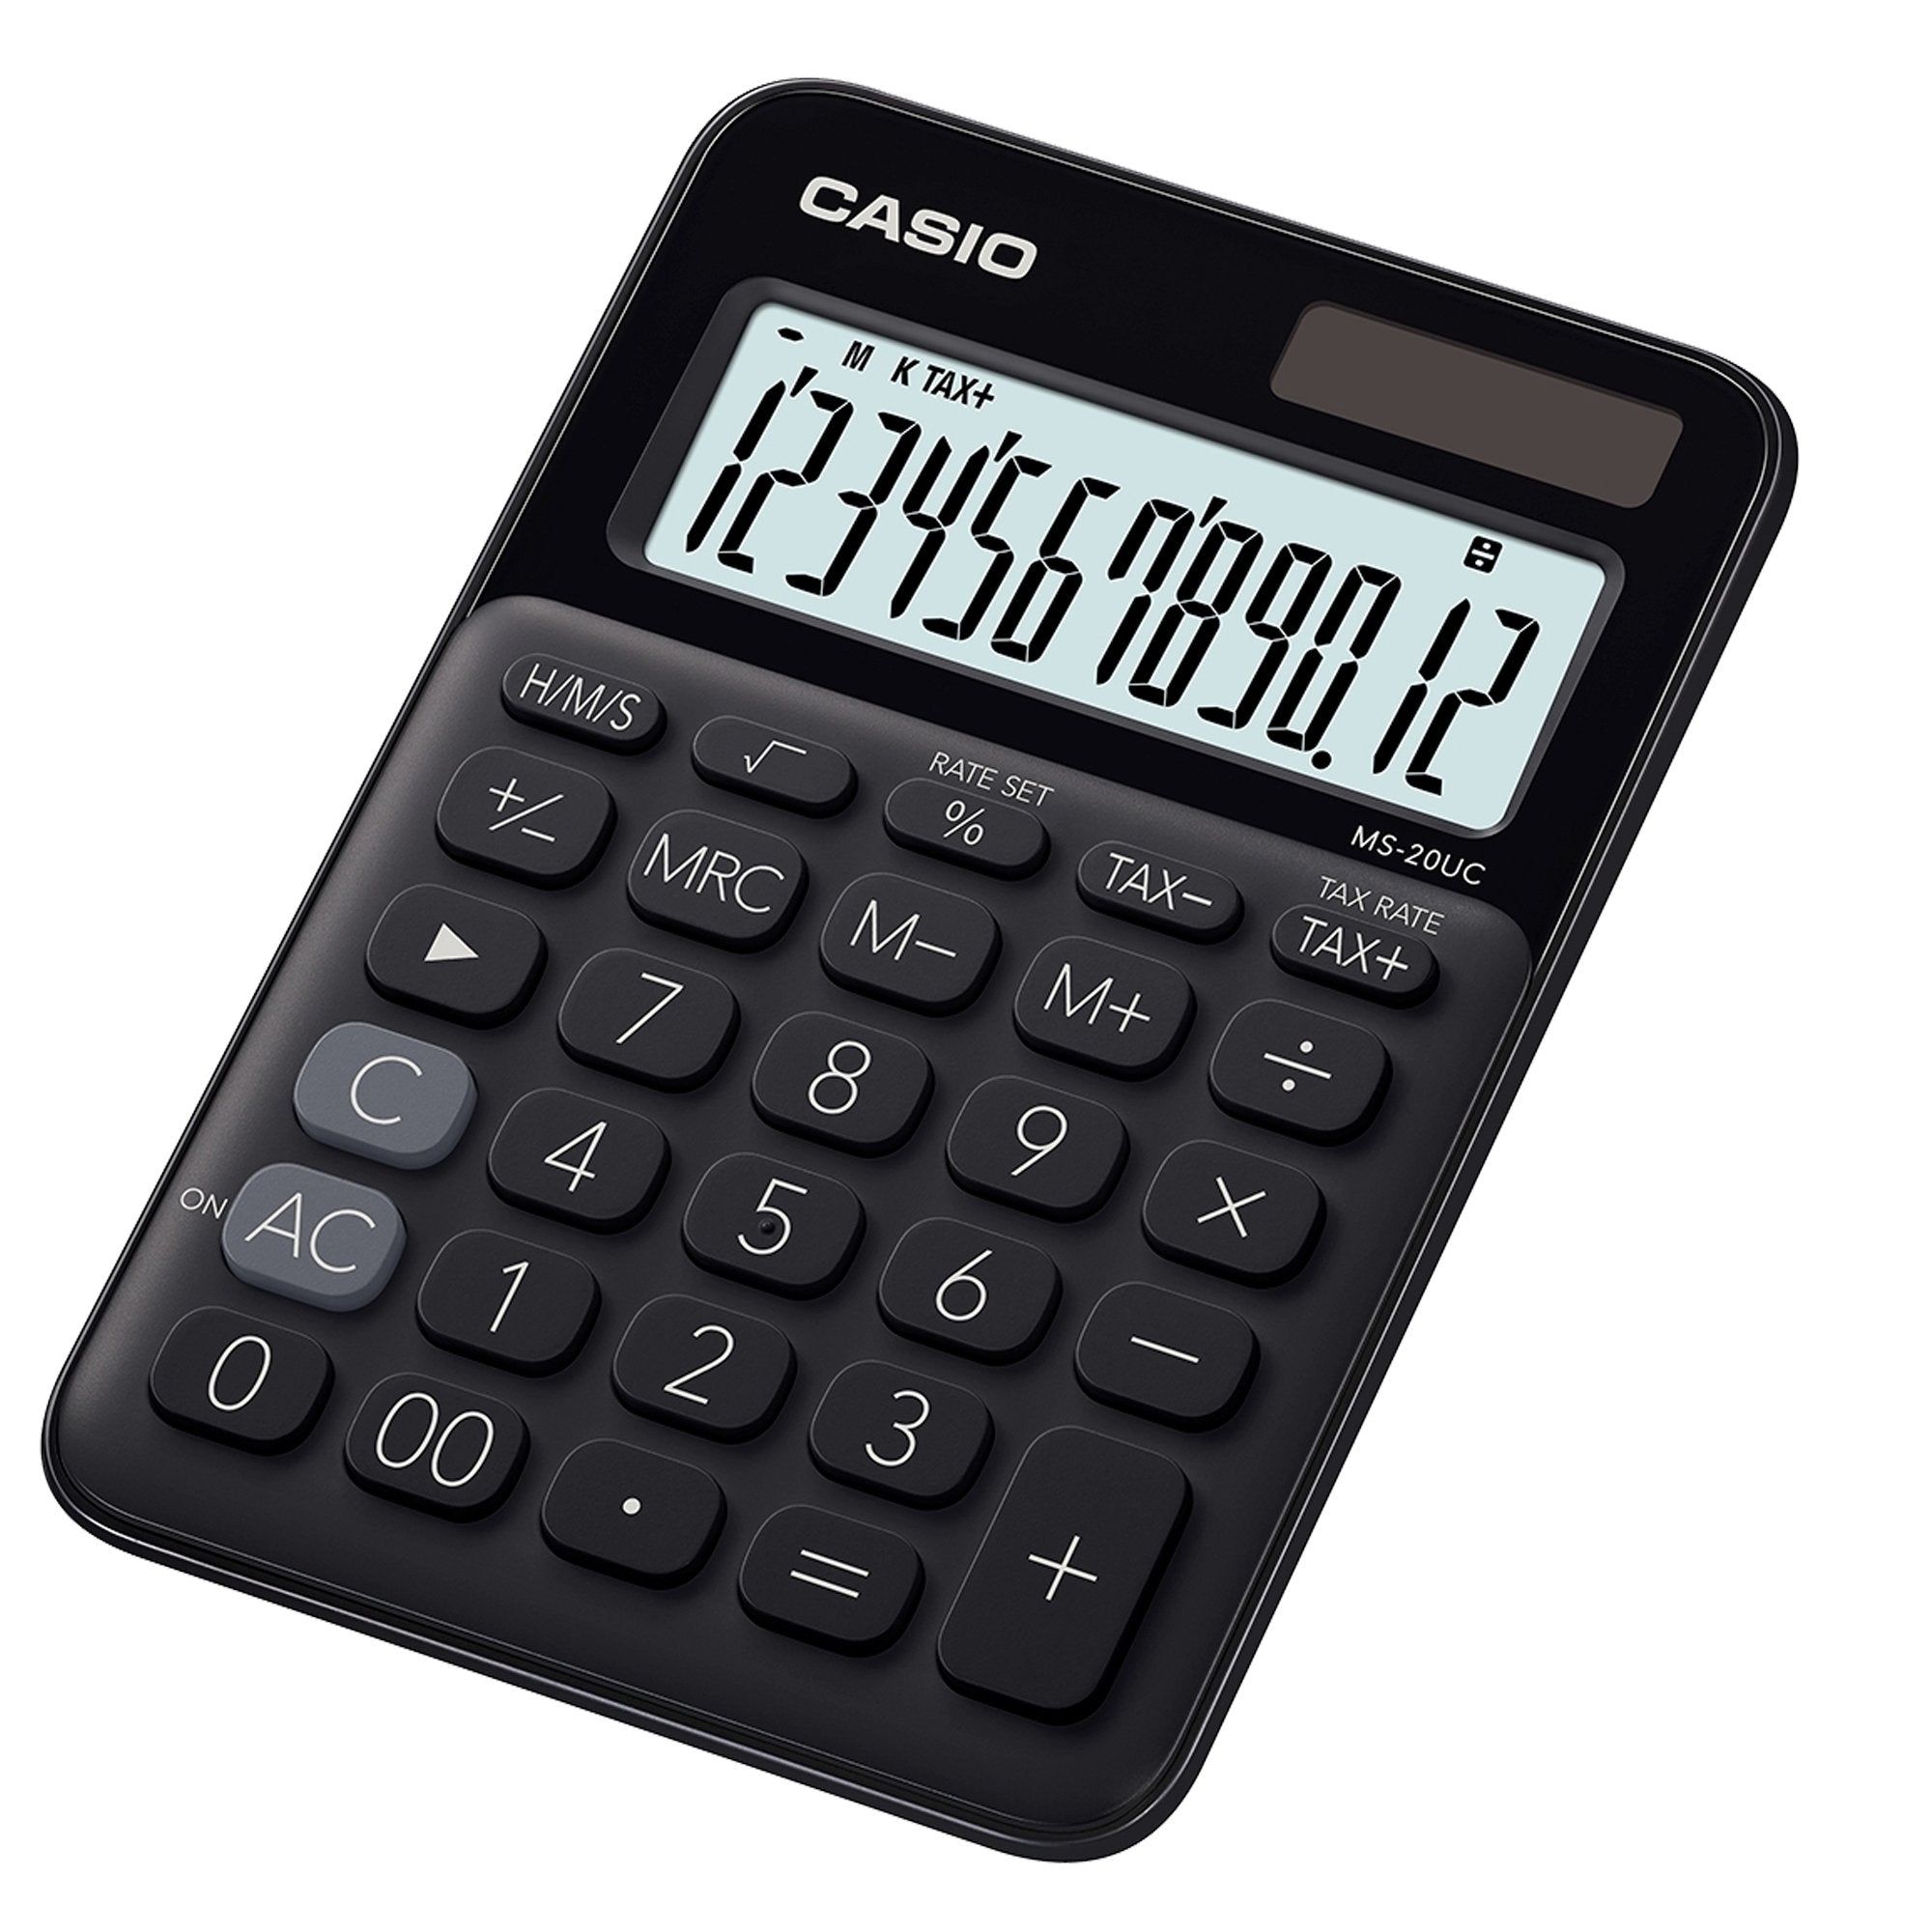 casio-calcolatrice-tavolo-ms-20uc-nera